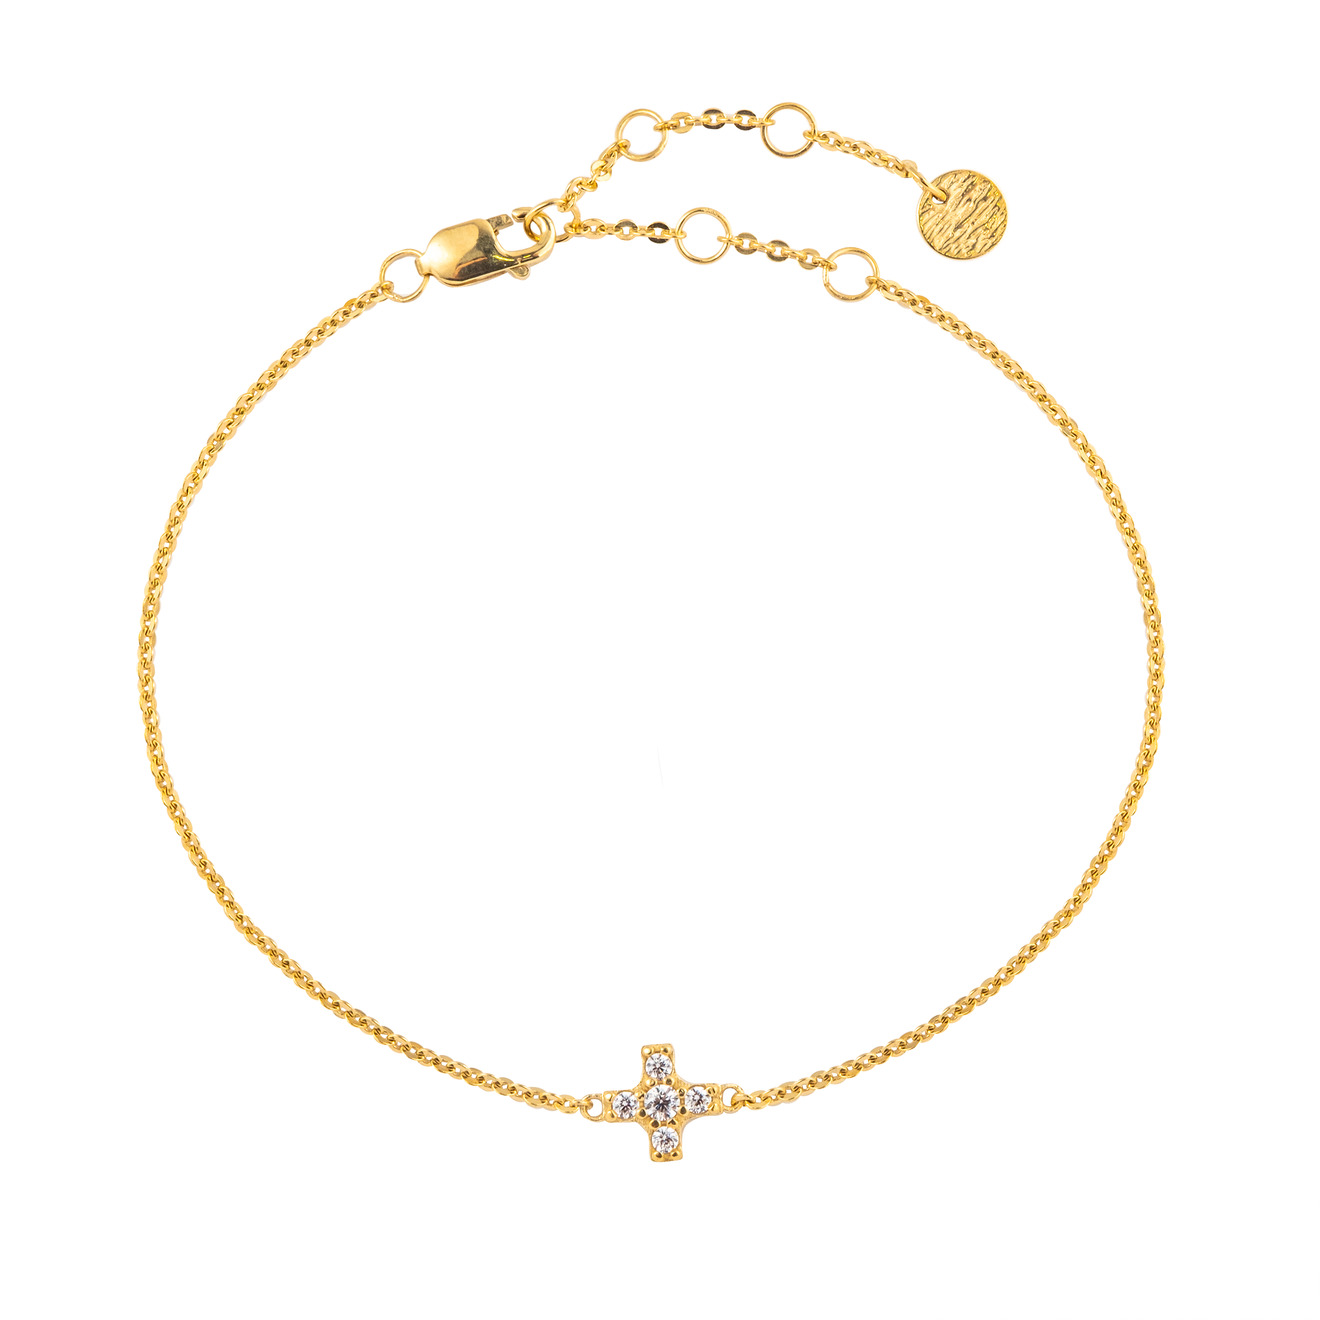 SKYE Позолоченный браслет с маленьким крестом с камнями skye позолоченный браслет со звездами